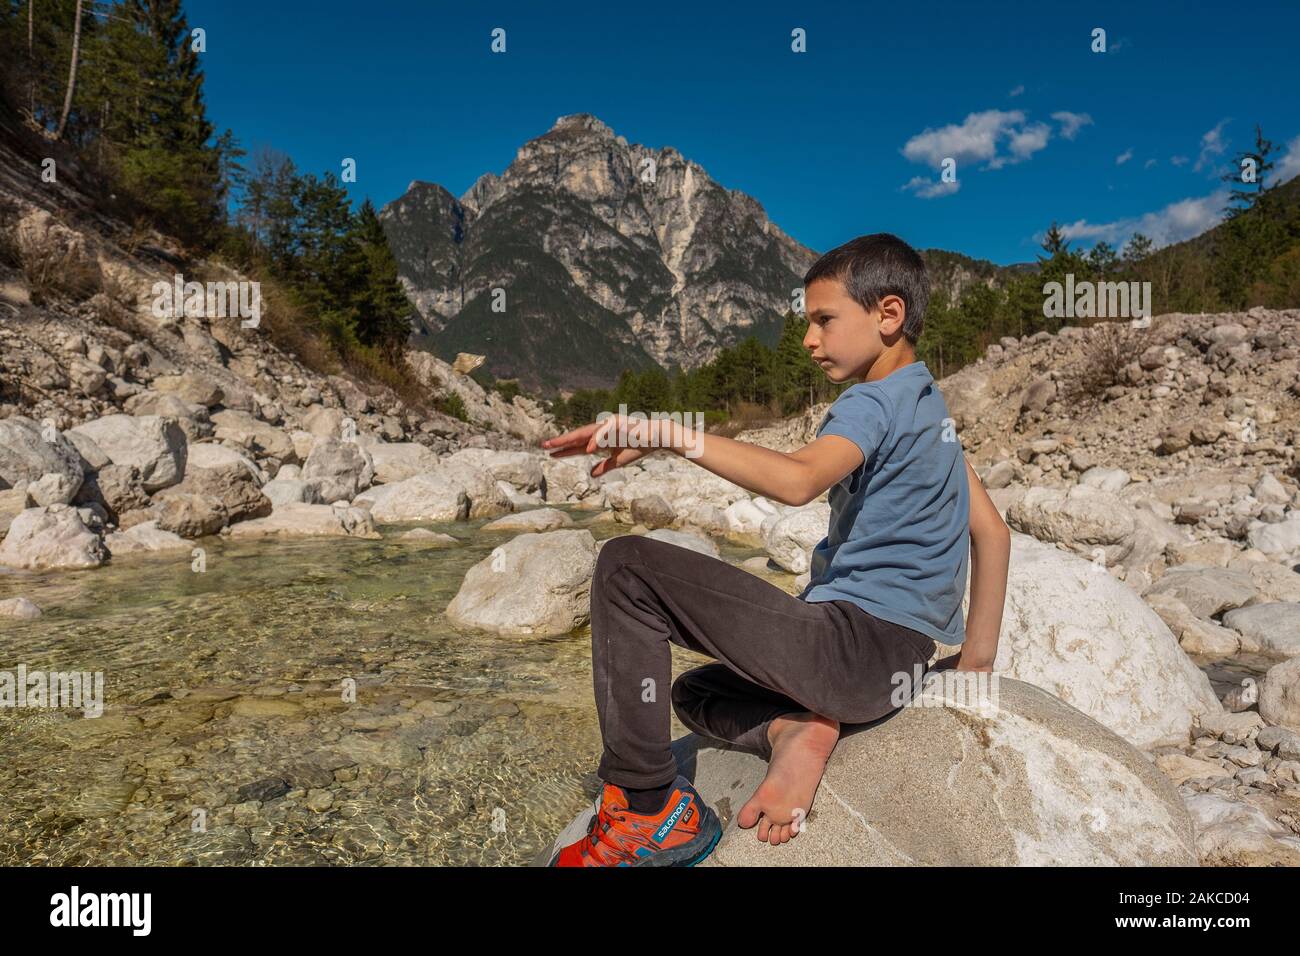 Italien, Zrece, Provici, Biwak am Fuße der Alpen, Clément die Gelegenheit nutzt, um mit Steinen zu spielen Stockfoto